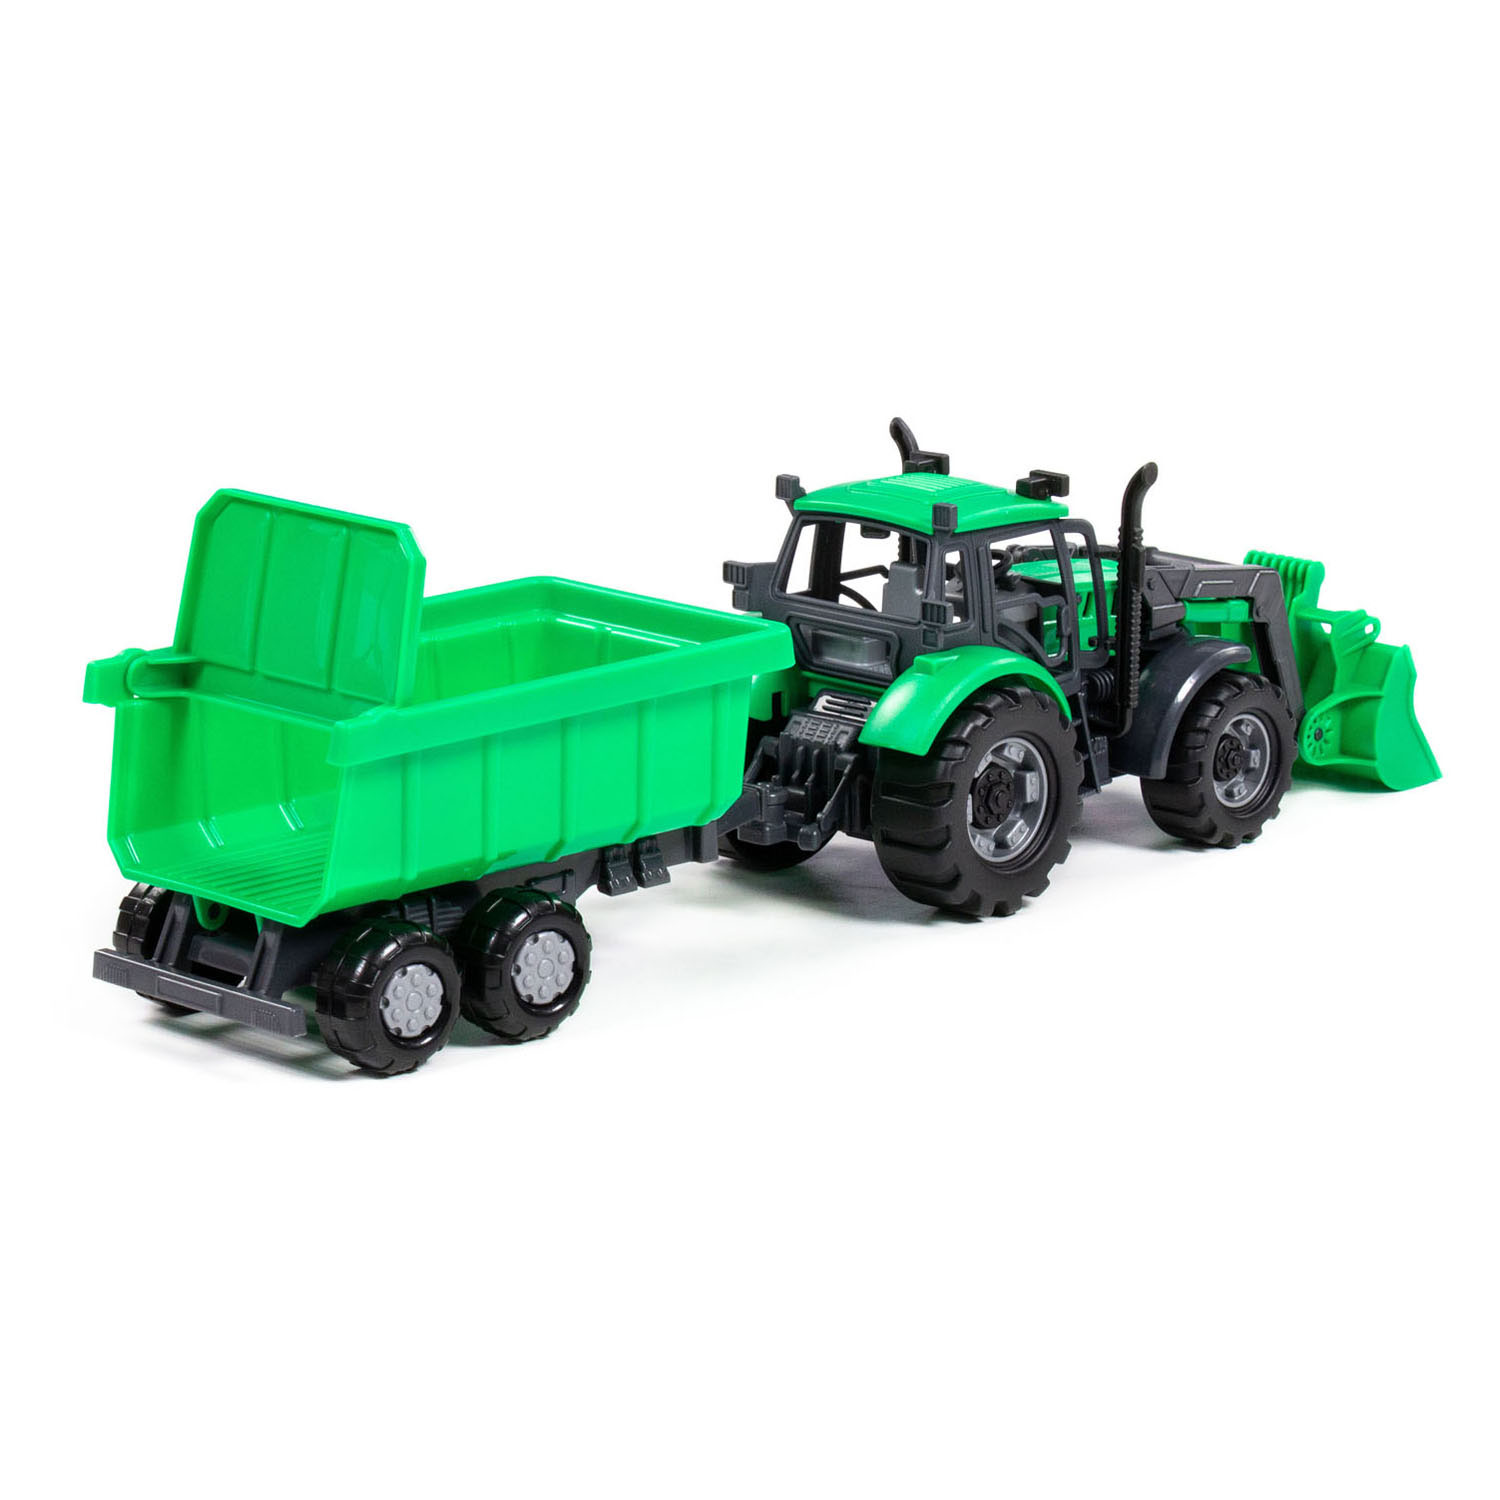 Cavallino Traktor mit Lader und Anhänger, Kipper, grün, Maßstab 1:32